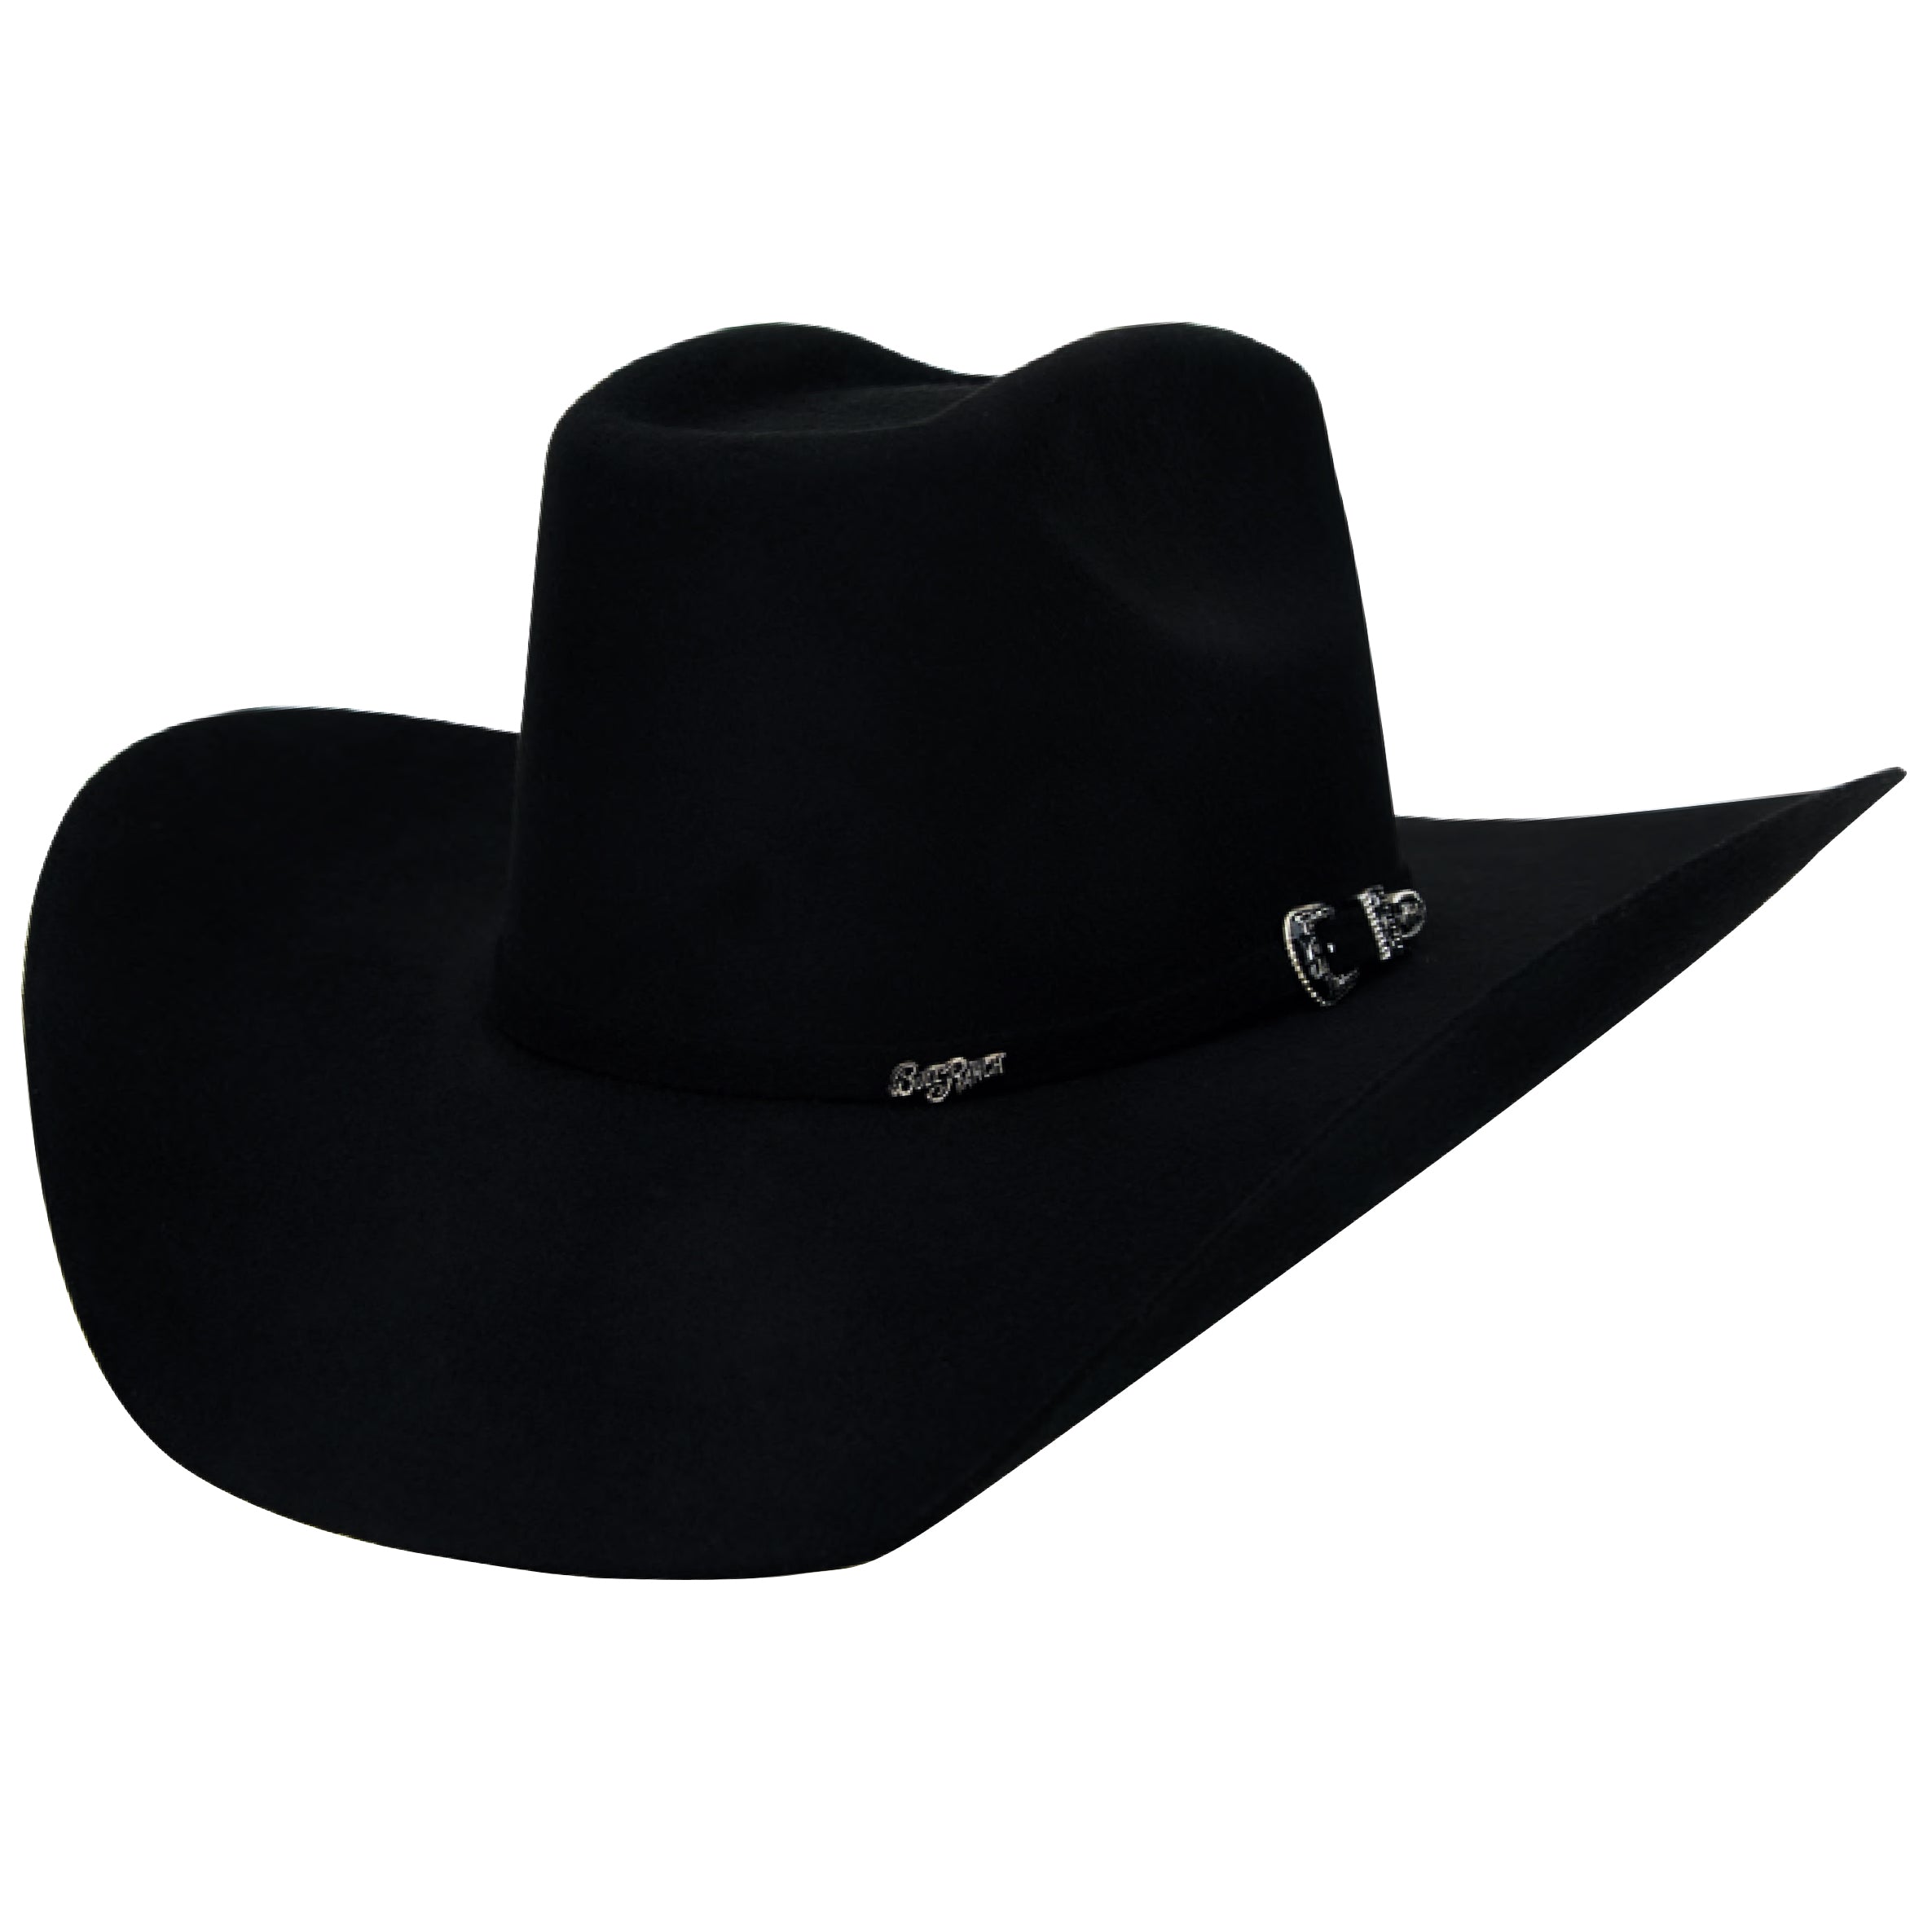 Big Bull 8 Seconds Black Cowboy Hat